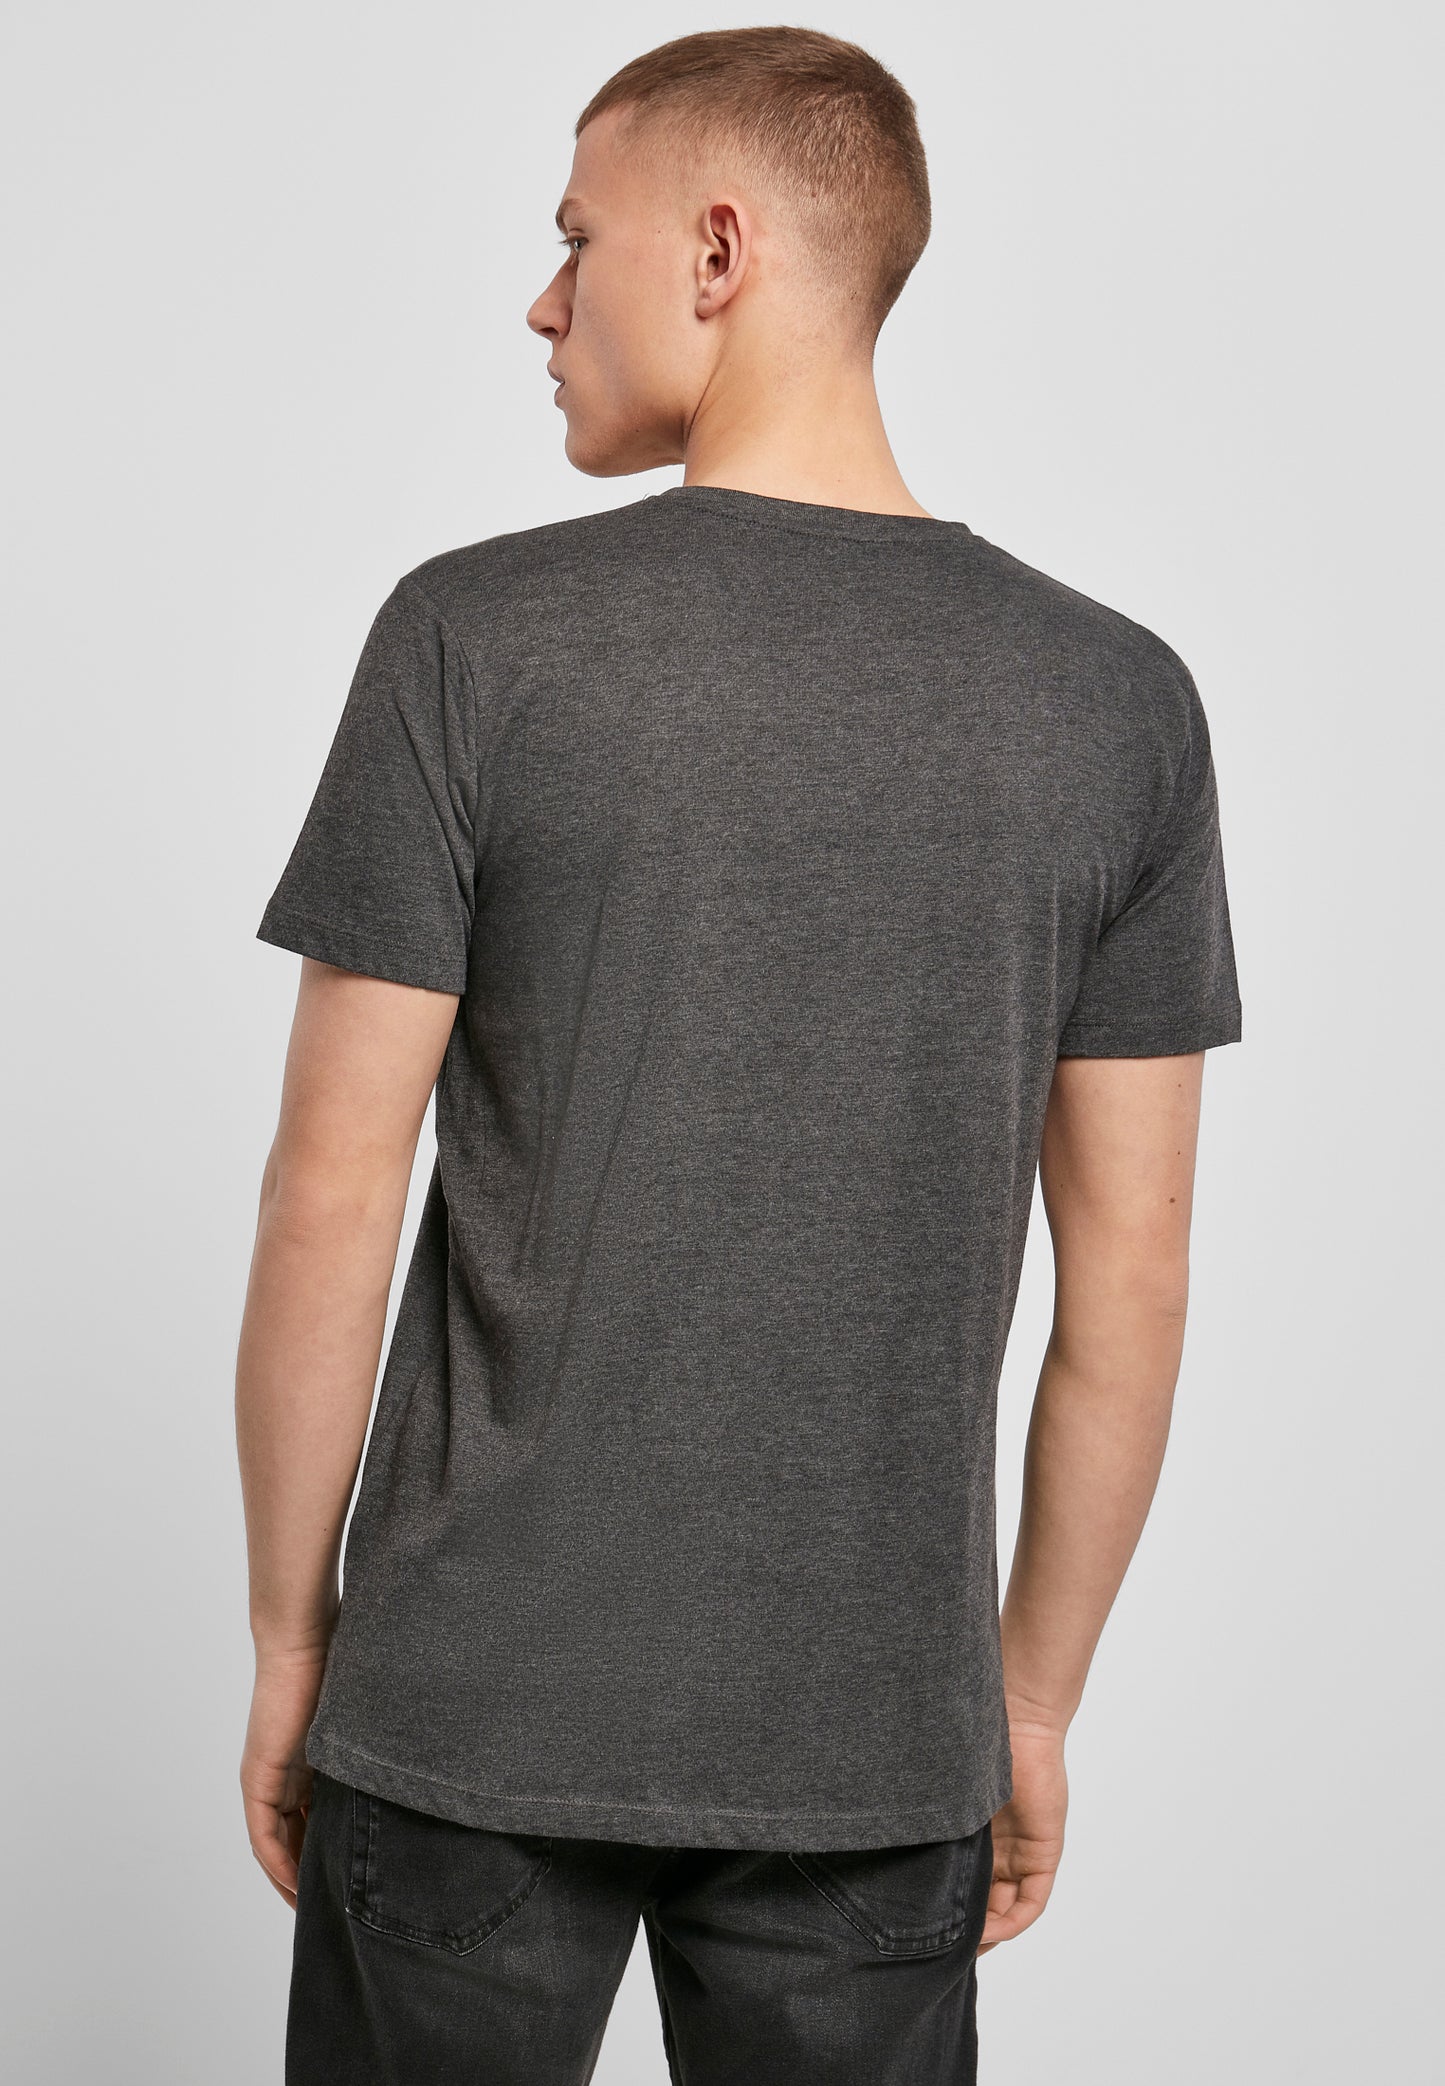 Light T-Shirt V-Neck